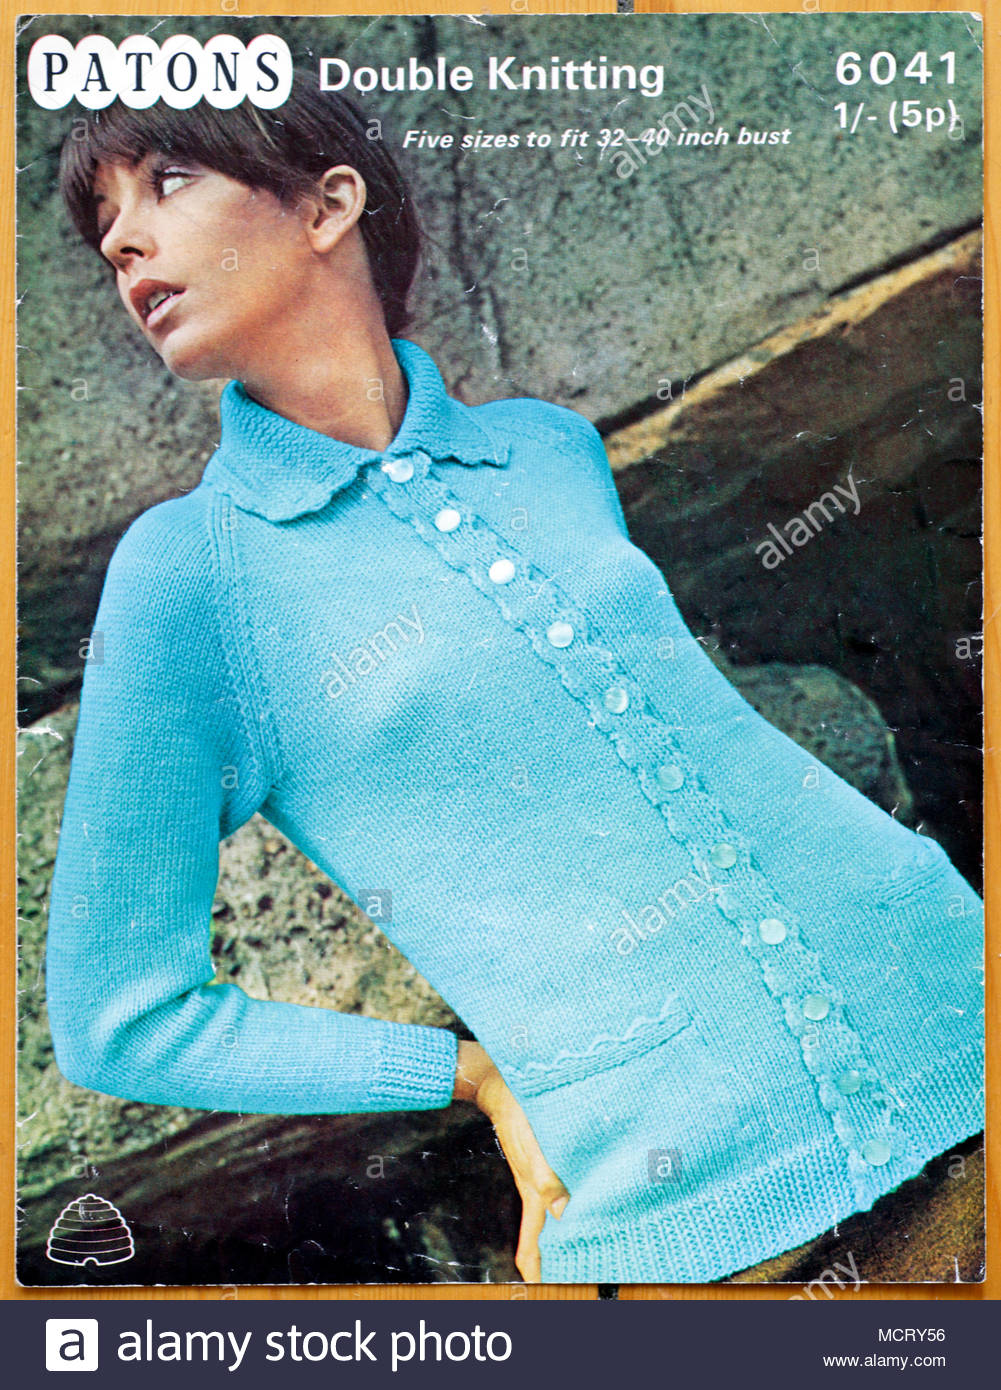 Patons Knitting pattern 1960s Stock Photo